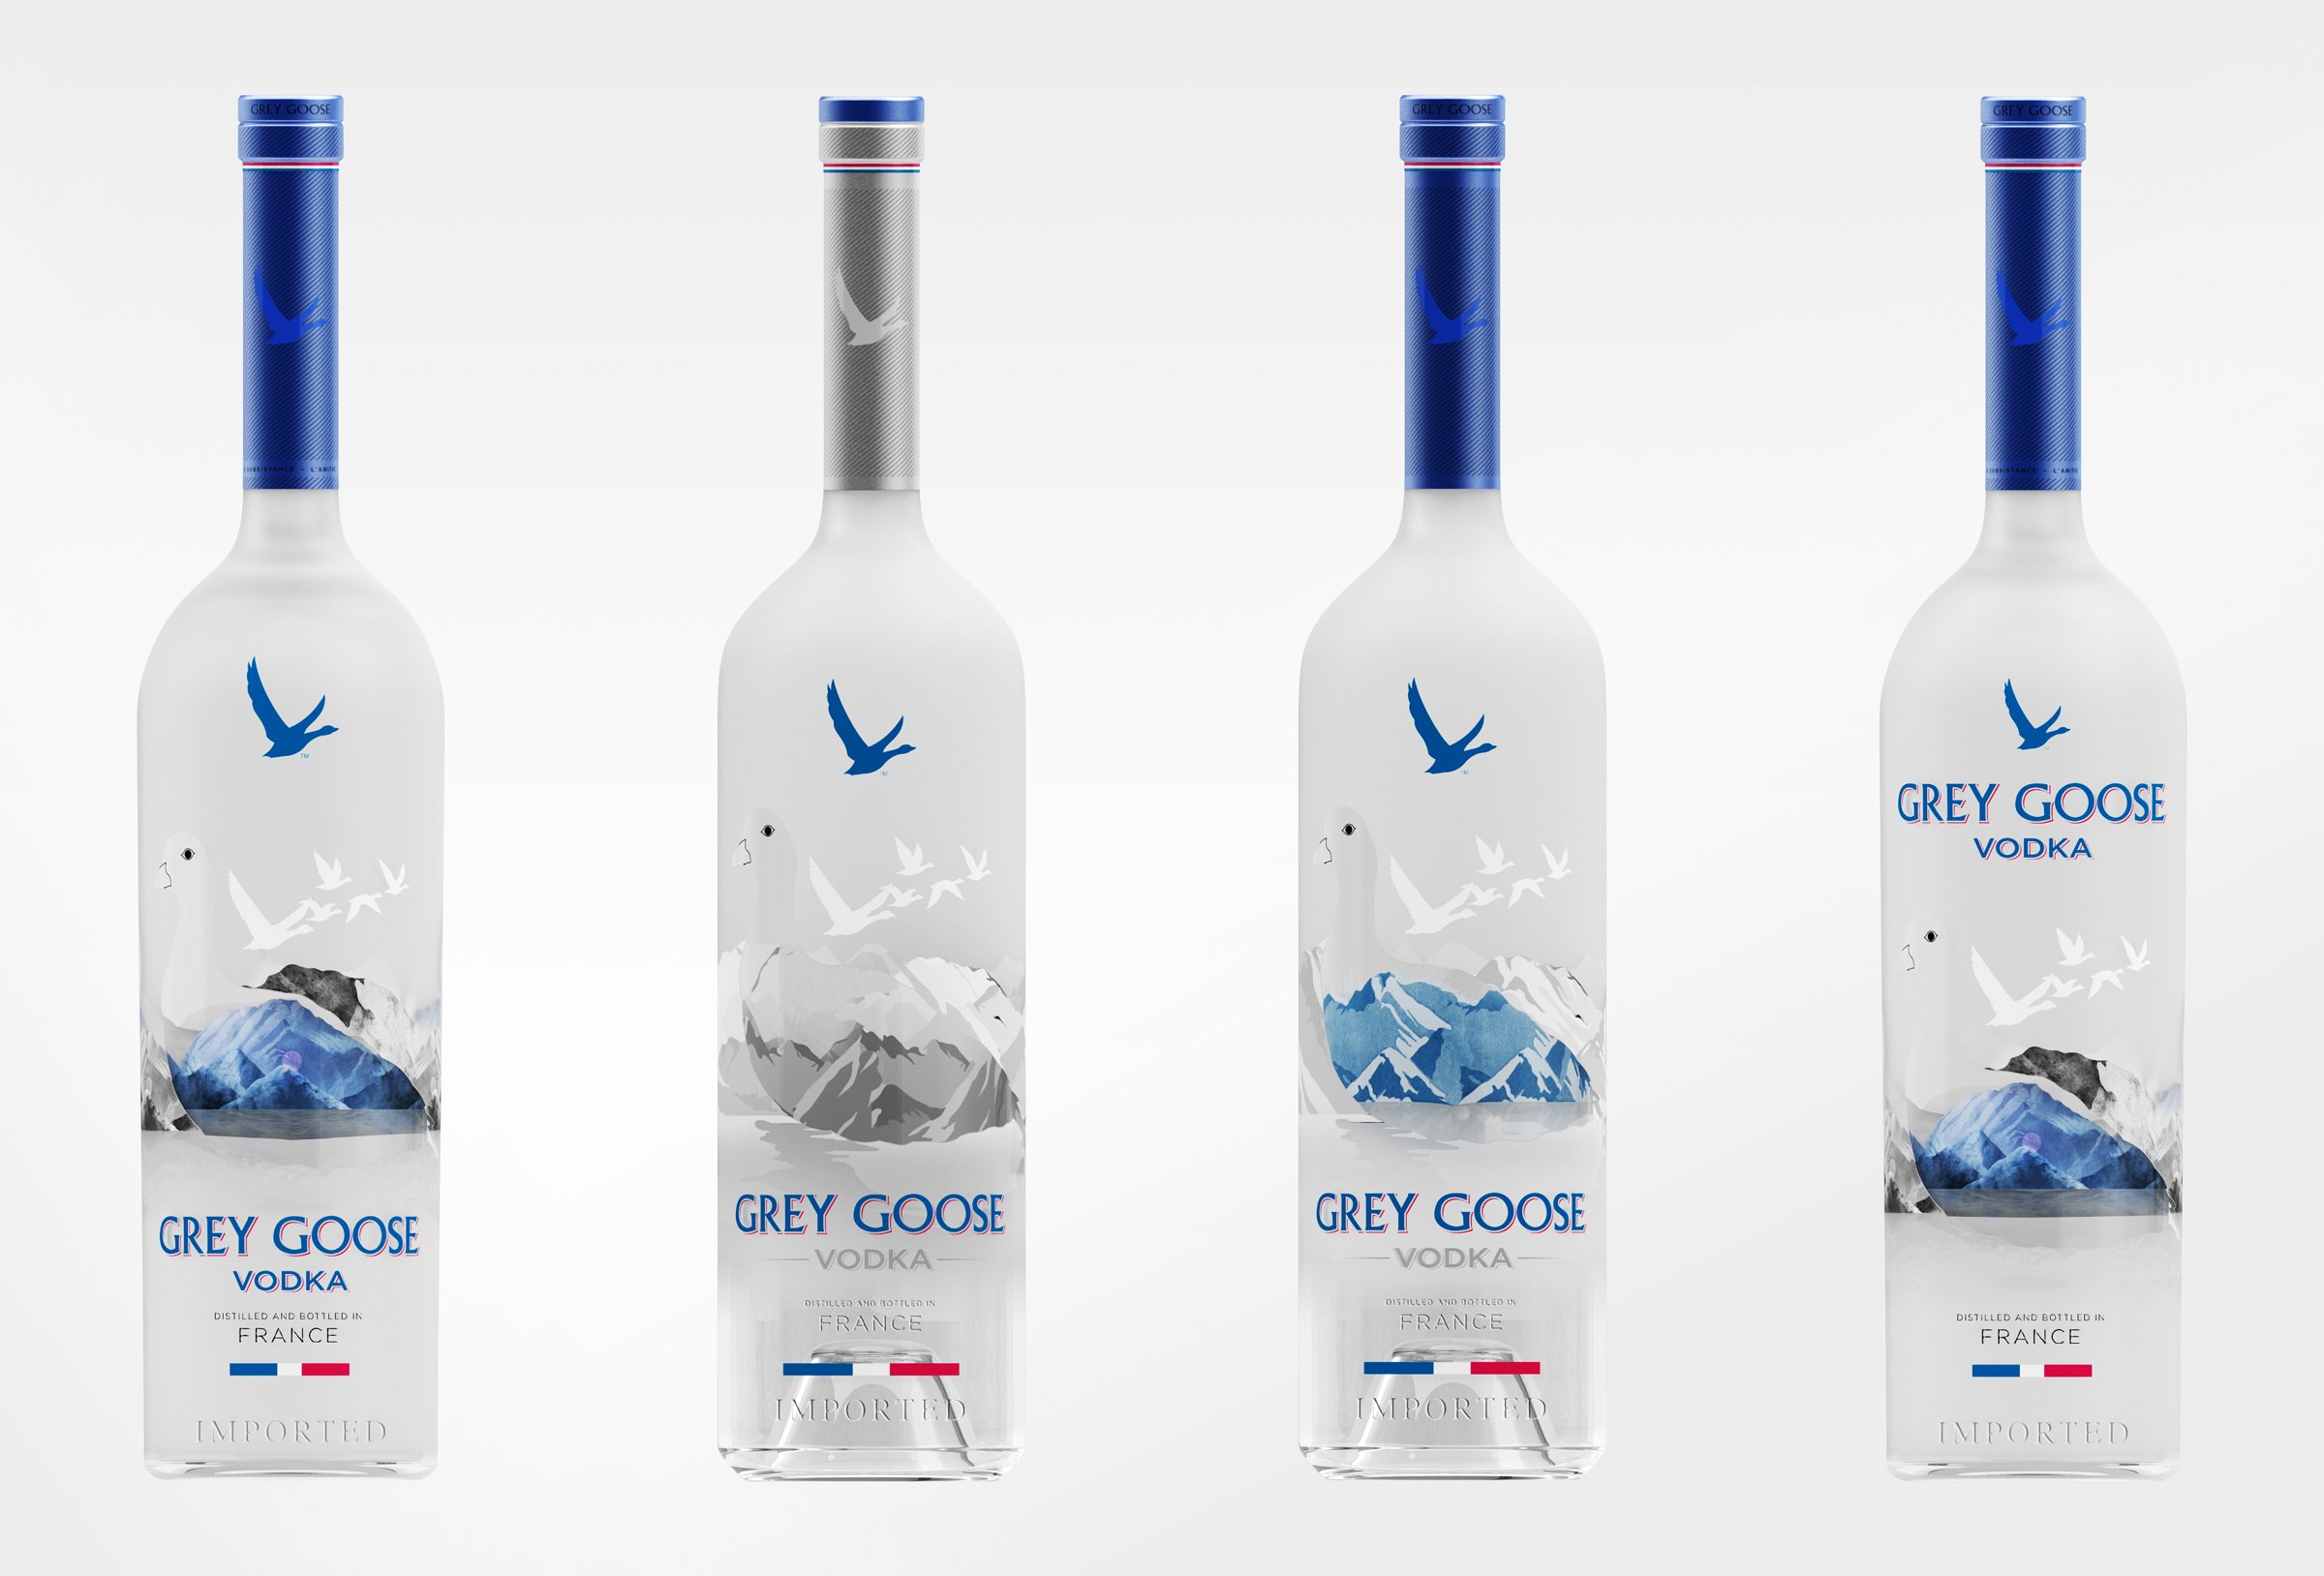 grey goose wallpaper,vodka,bottle,product,distilled beverage,glass bottle